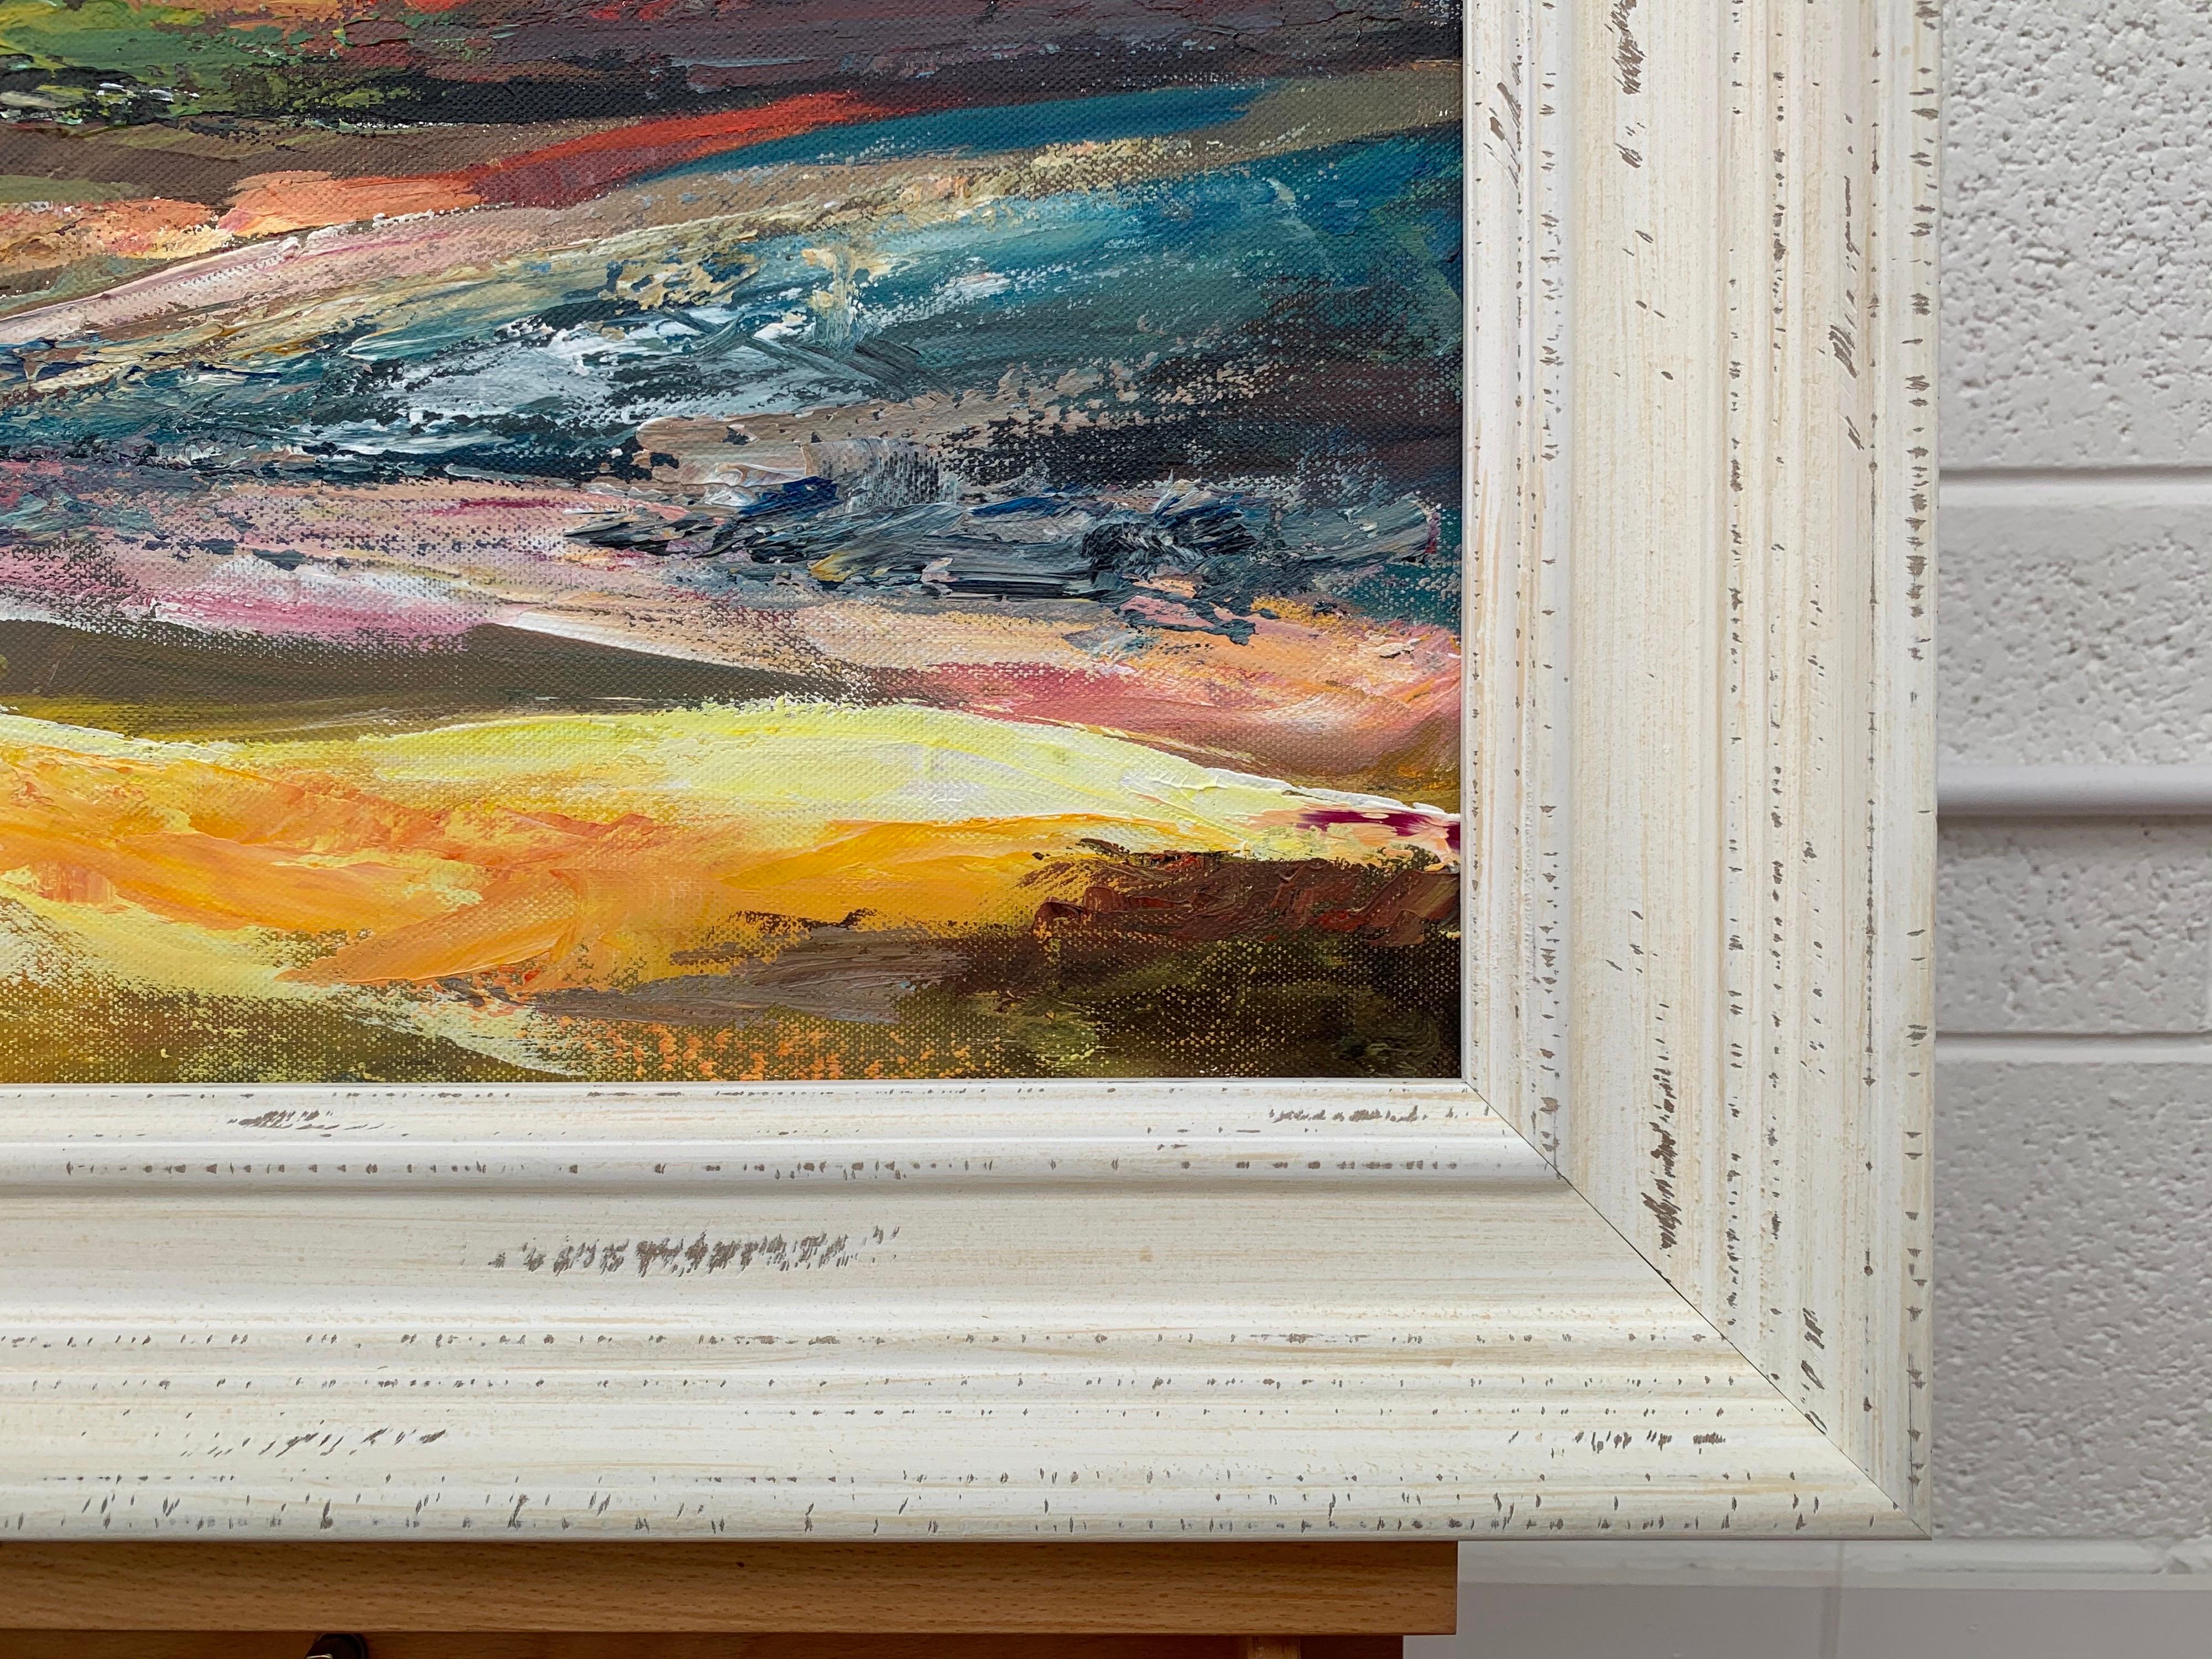 Farbenfrohe englische Moorlandschaft mit rosafarbenem Himmel von der führenden zeitgenössischen britischen Künstlerin Angela Wakefield. Dieses Original ist Teil ihrer Serie Abstrakte Landschaften

Kunst misst 20 x 16 Zoll
Rahmen misst 26 x 22